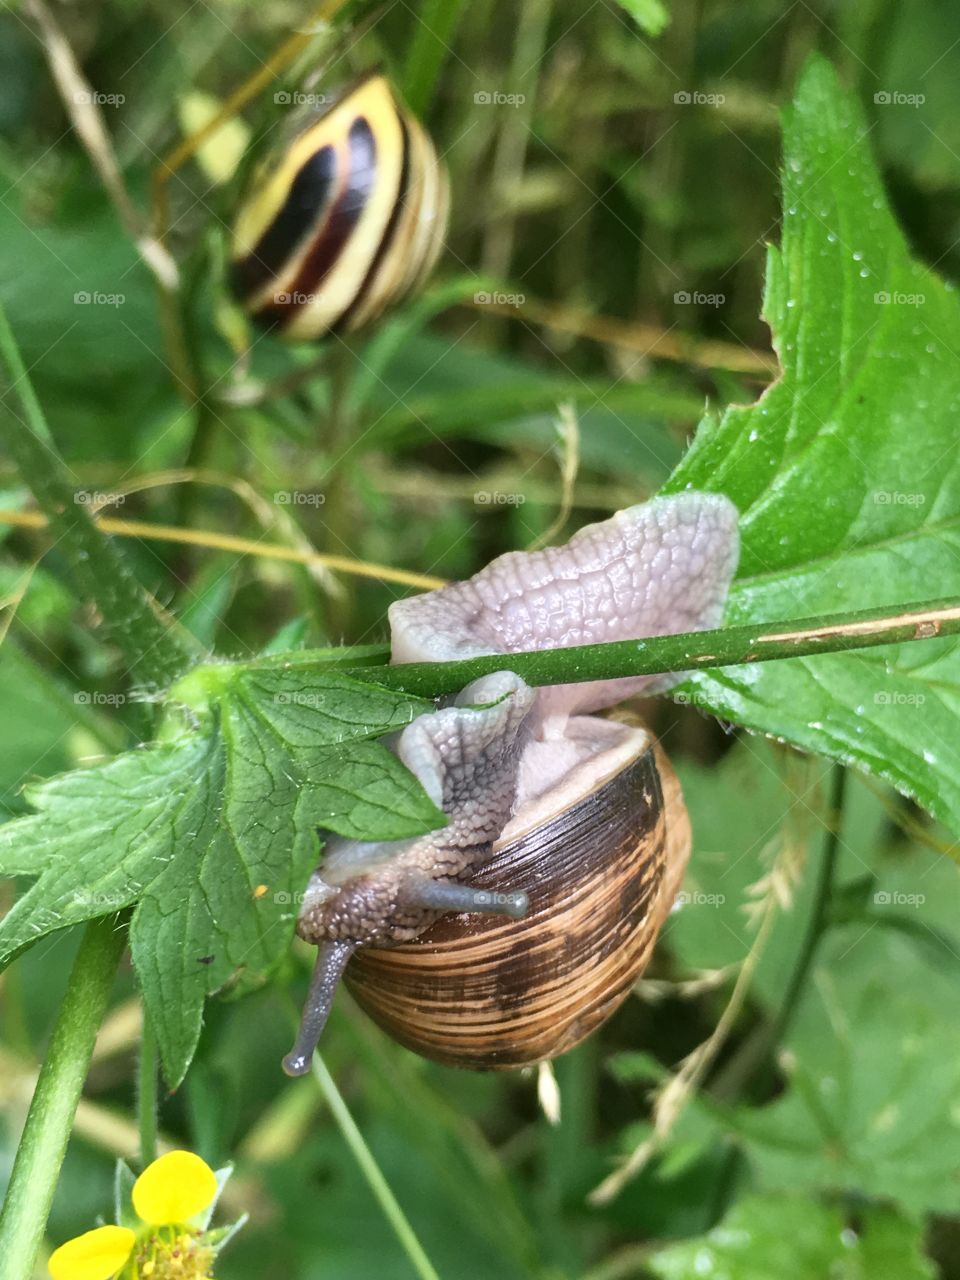 Upside down snail